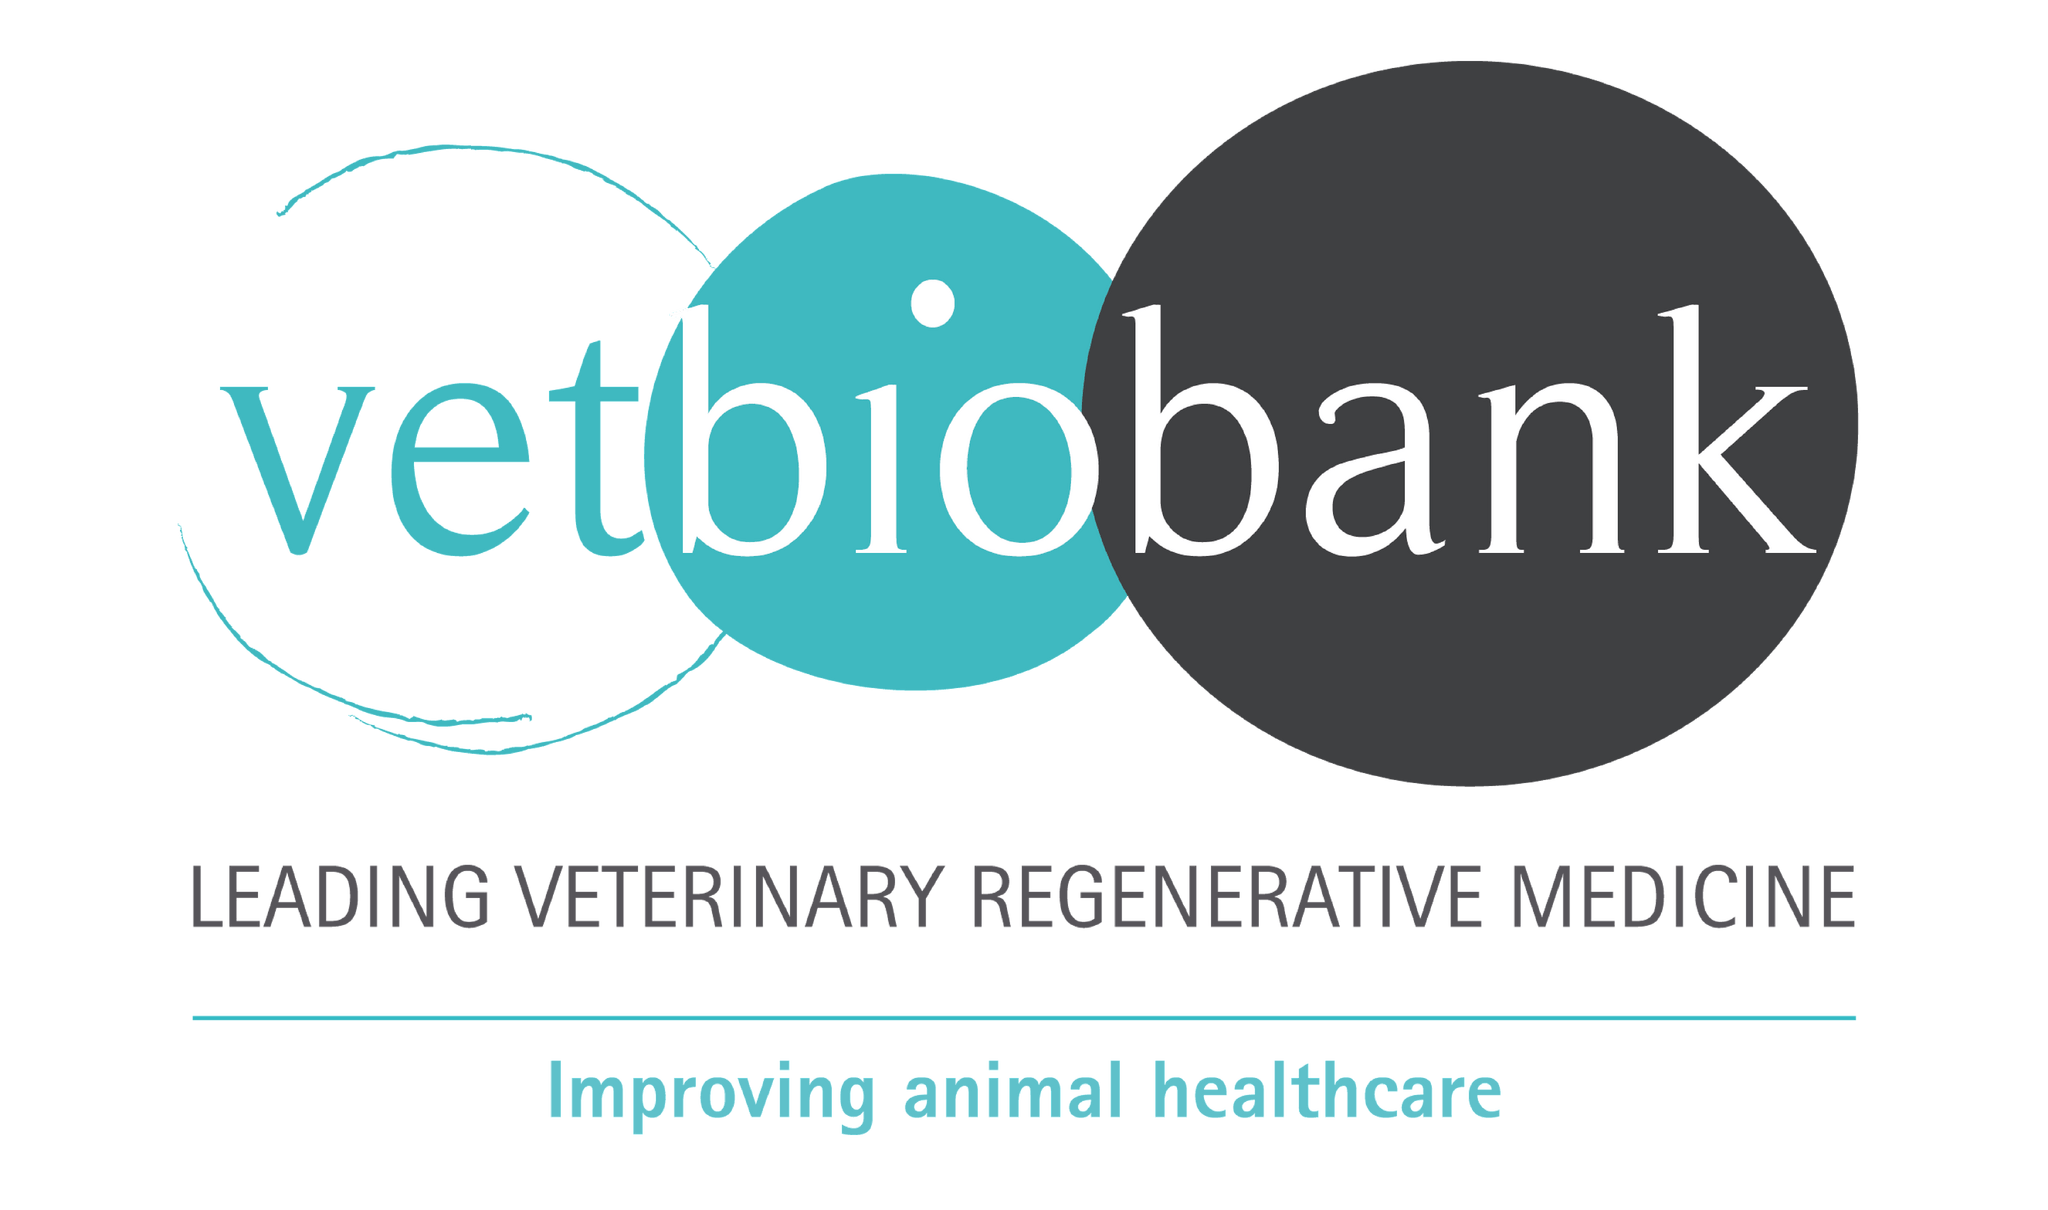 Vetbiobank signe un nouveau contrat de partenariat stratégique  avec un top 10 mondial de l’industrie pharmaceutique vétérinaire